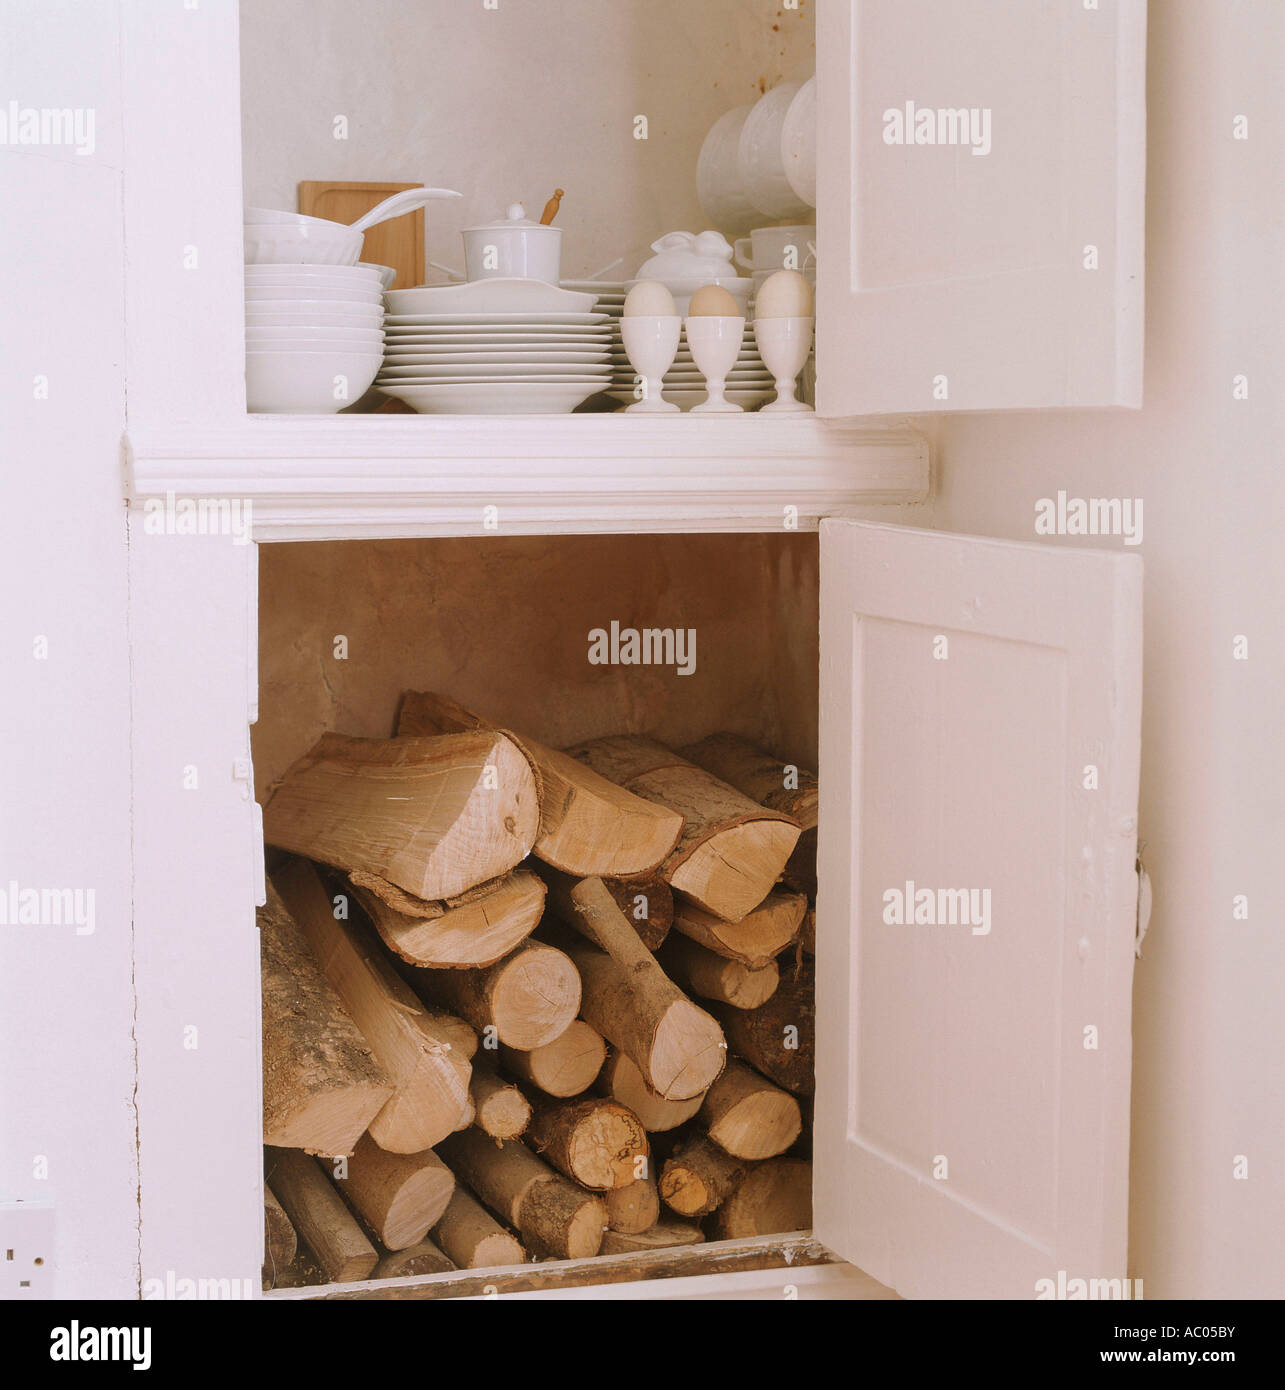 Offene Küche Lagerung Schränke mit Brennholz und Geschirr Stockfoto